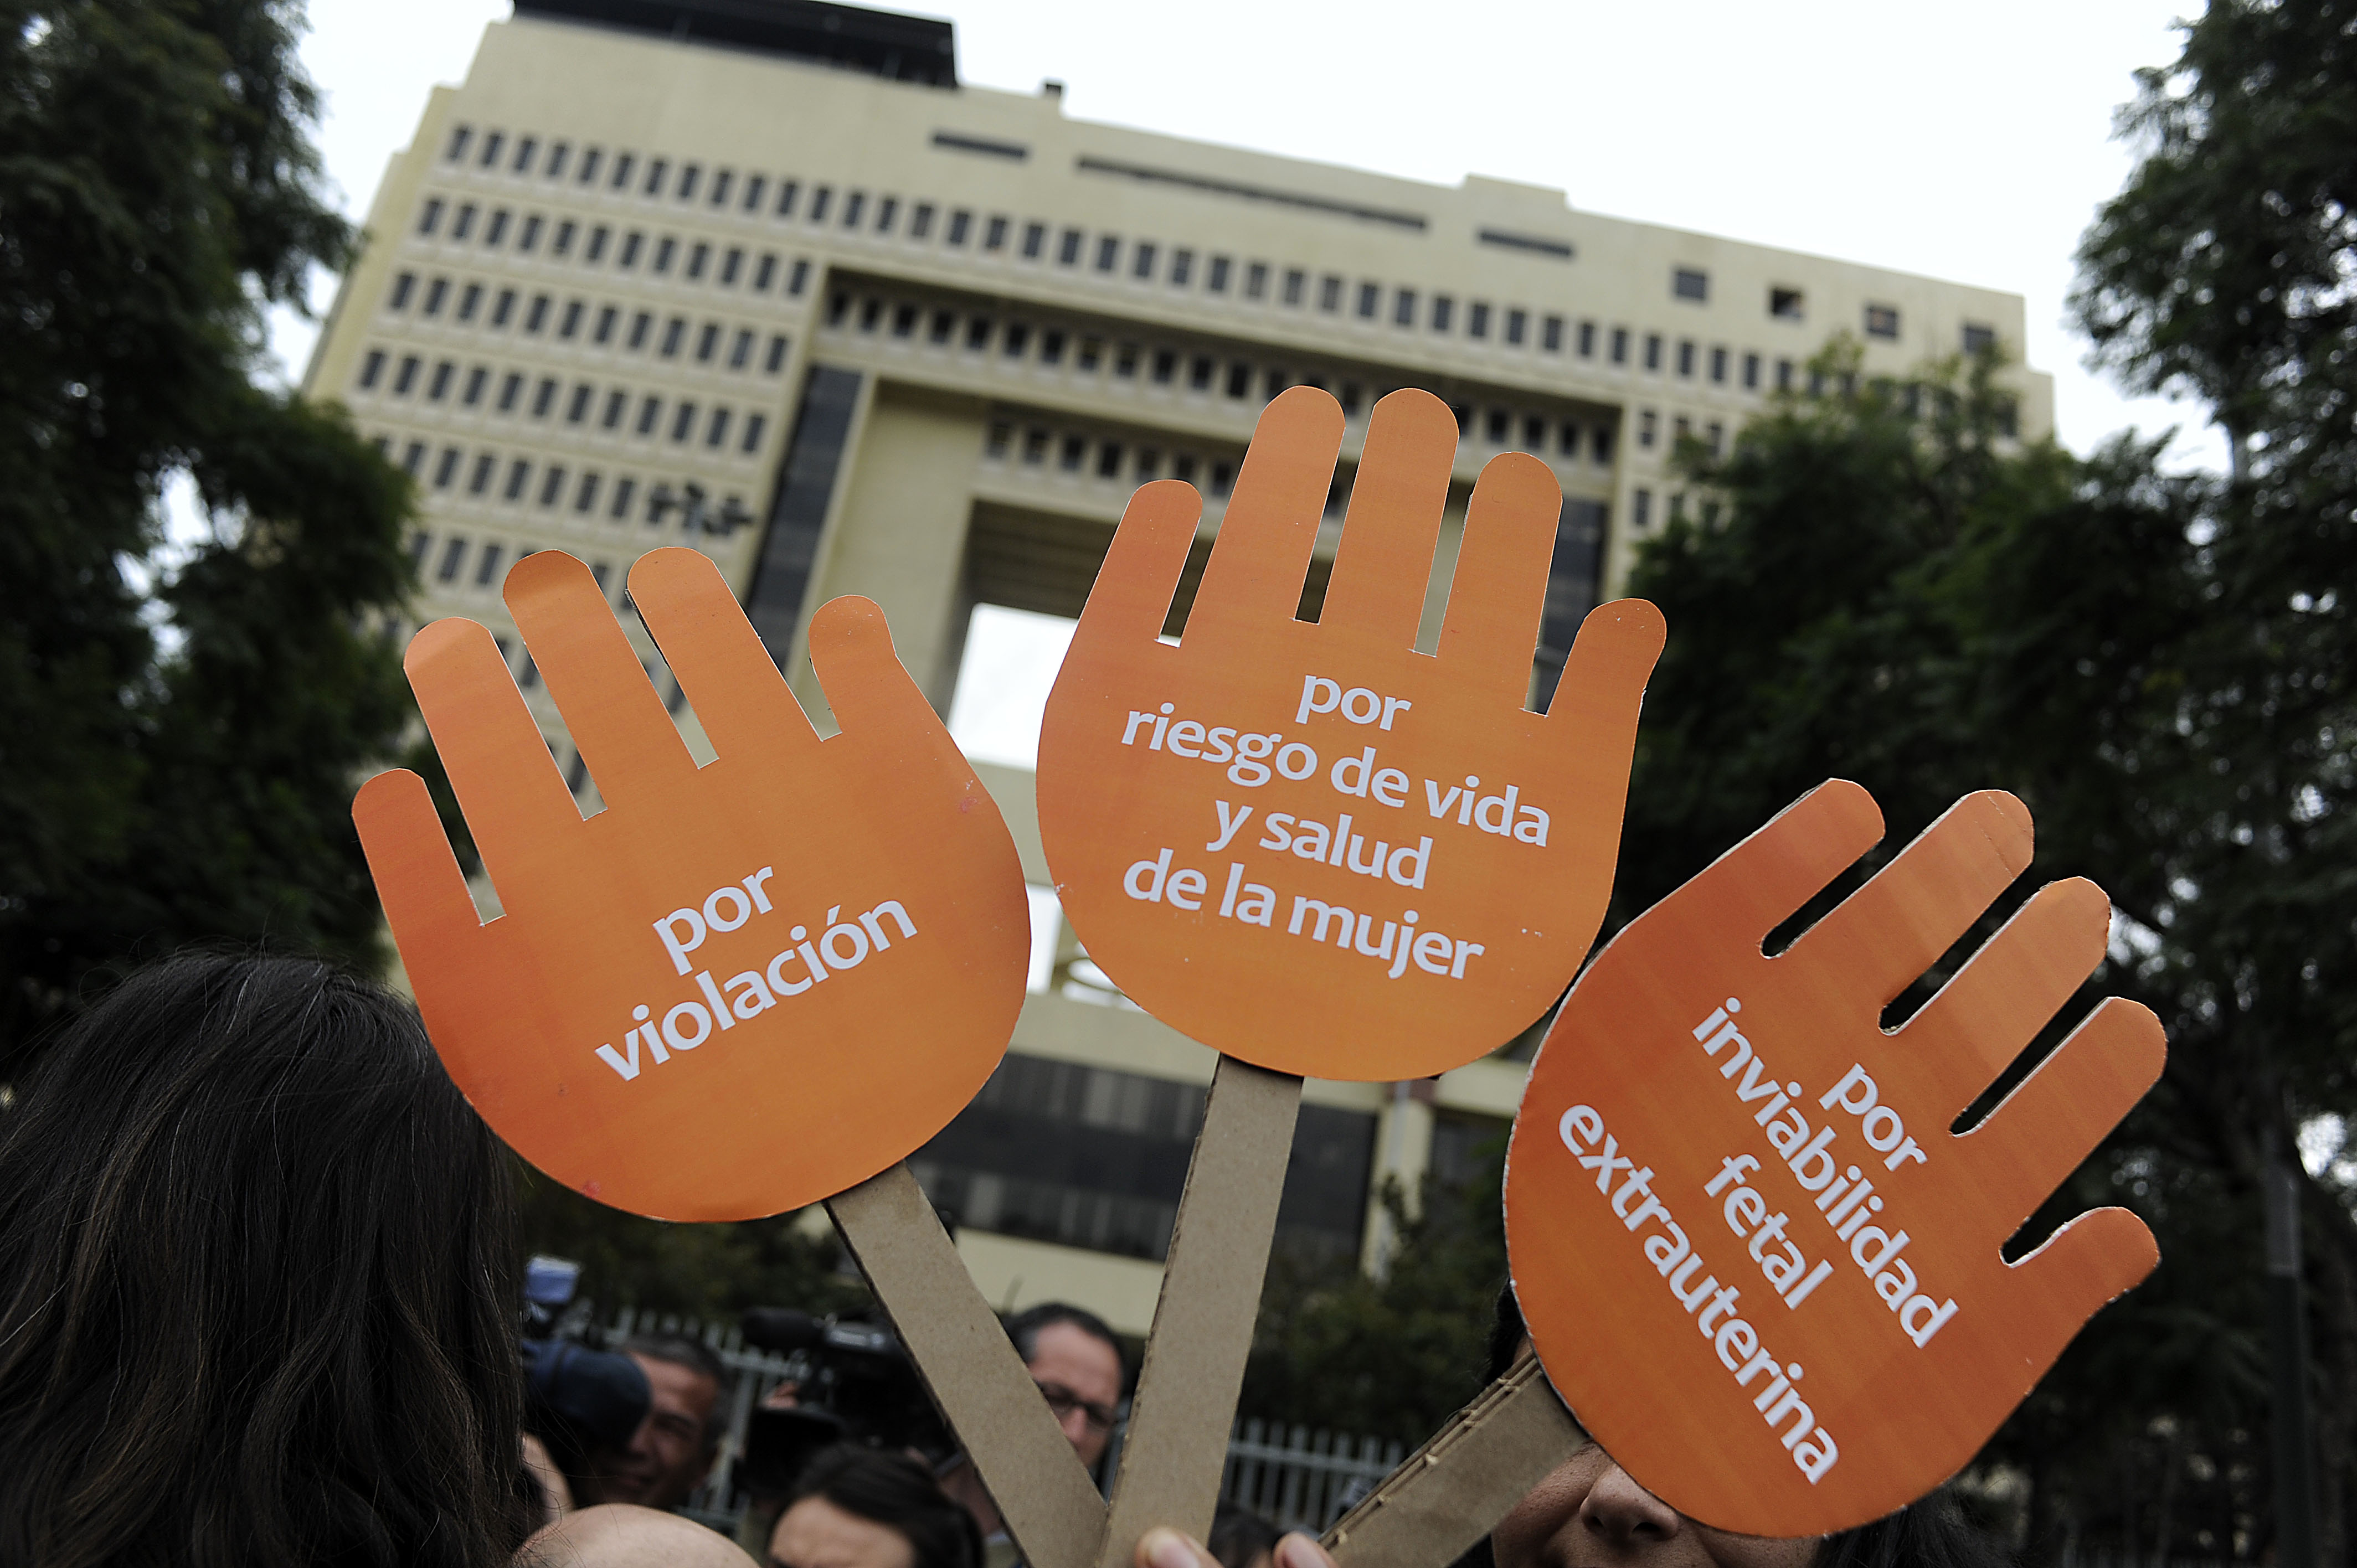 #Aborto3Causales: Intenso lobby previo a votación